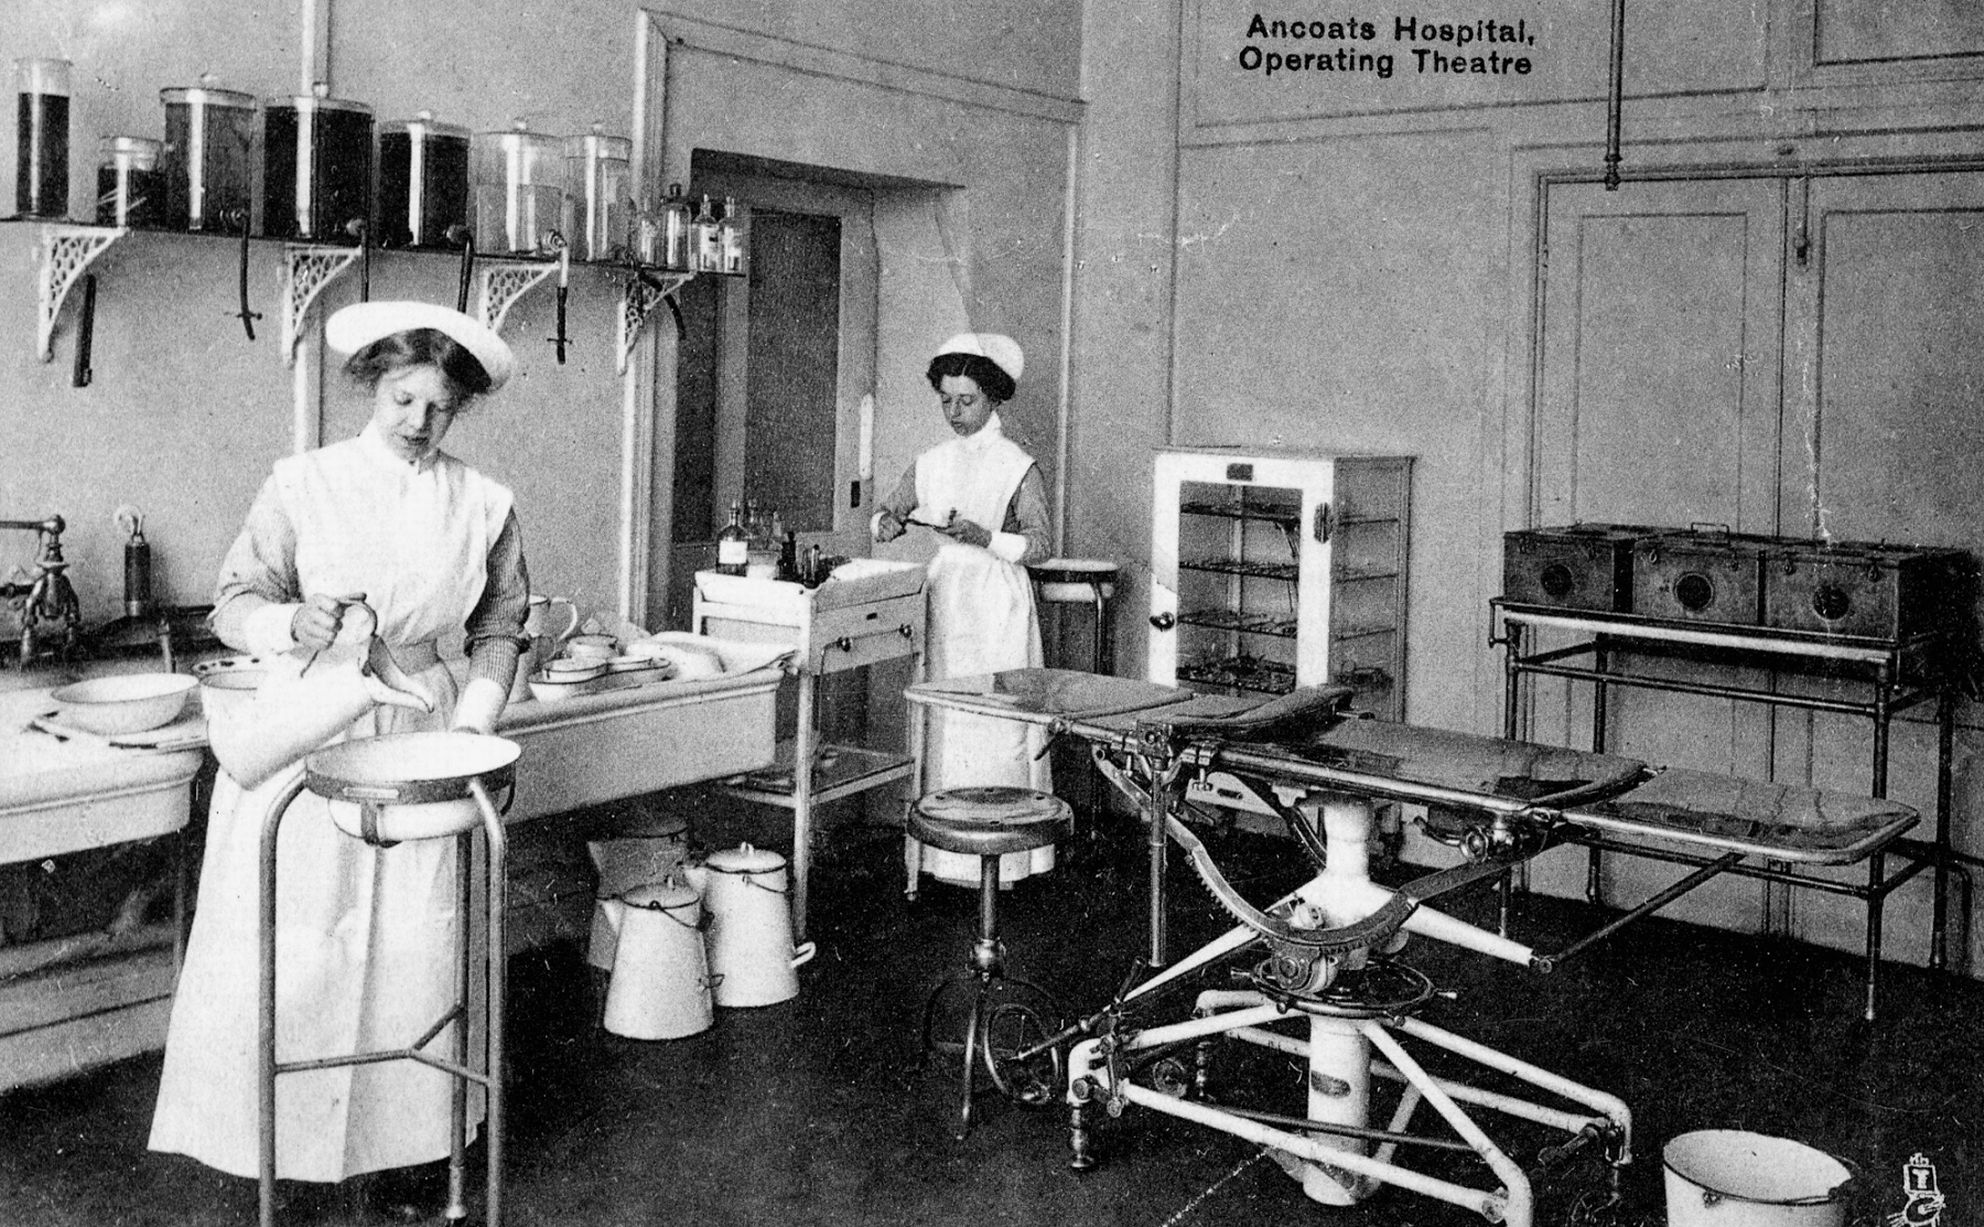 History of Ancoats Hospital